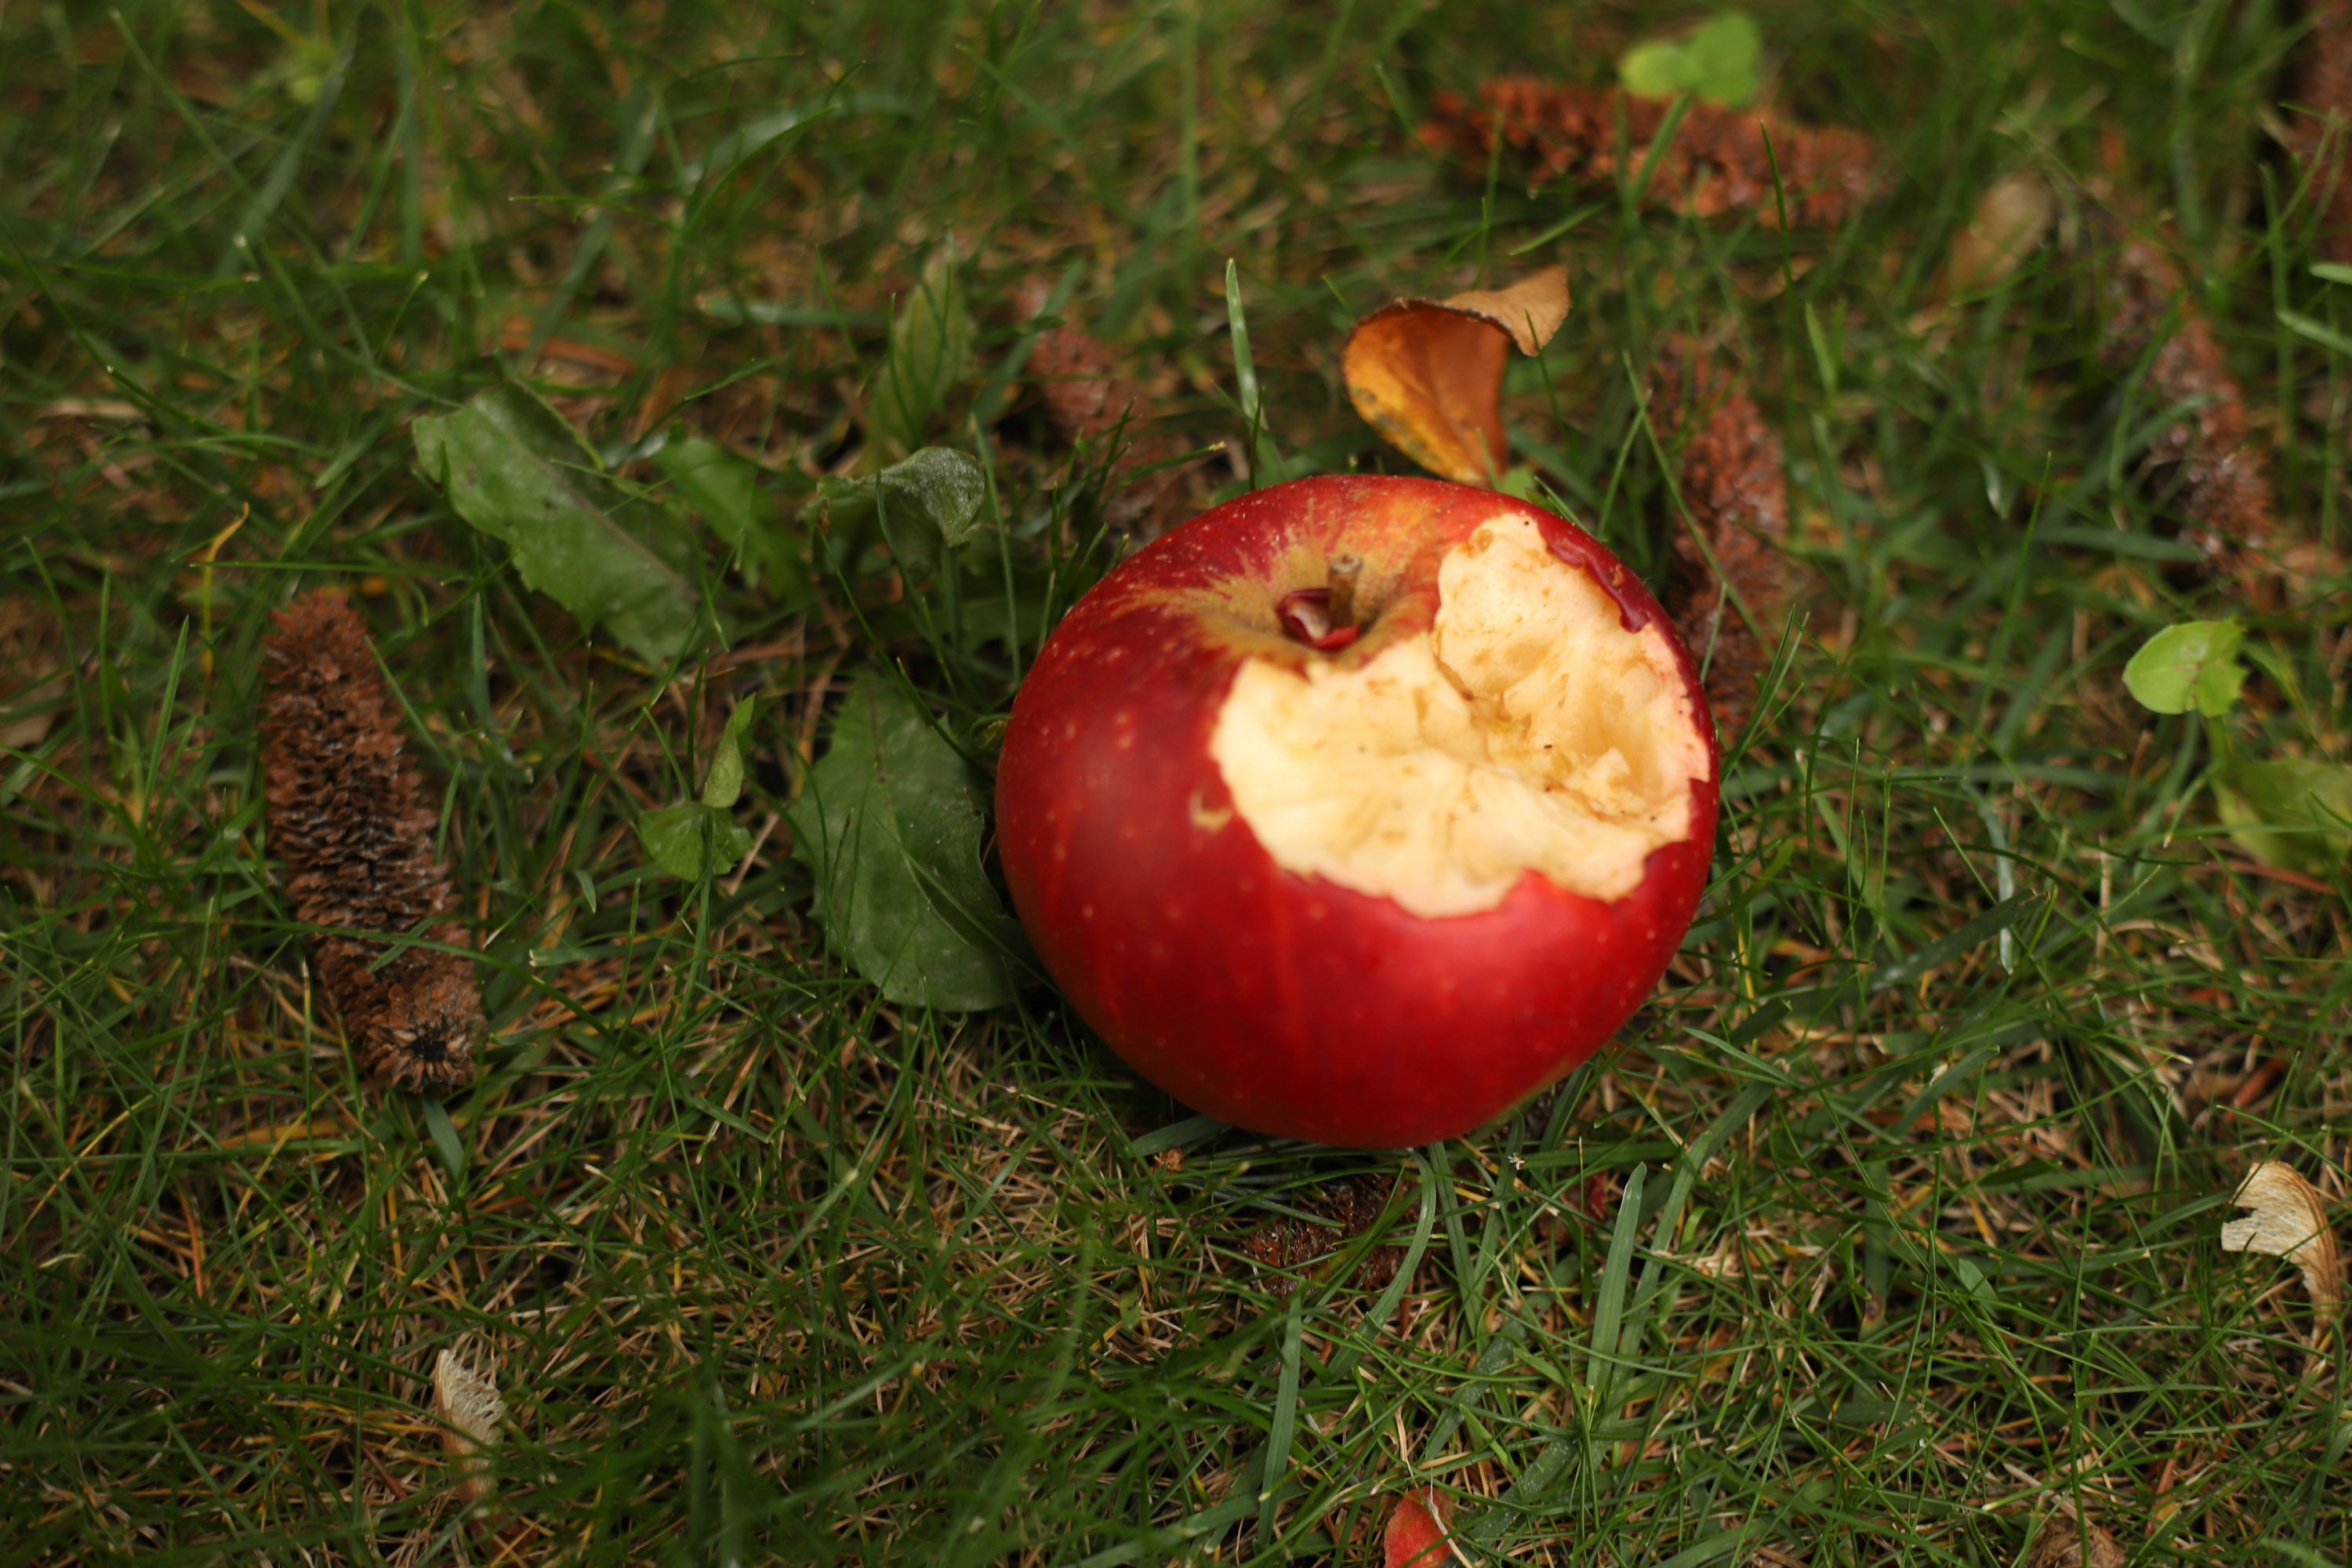 A rotten apple.